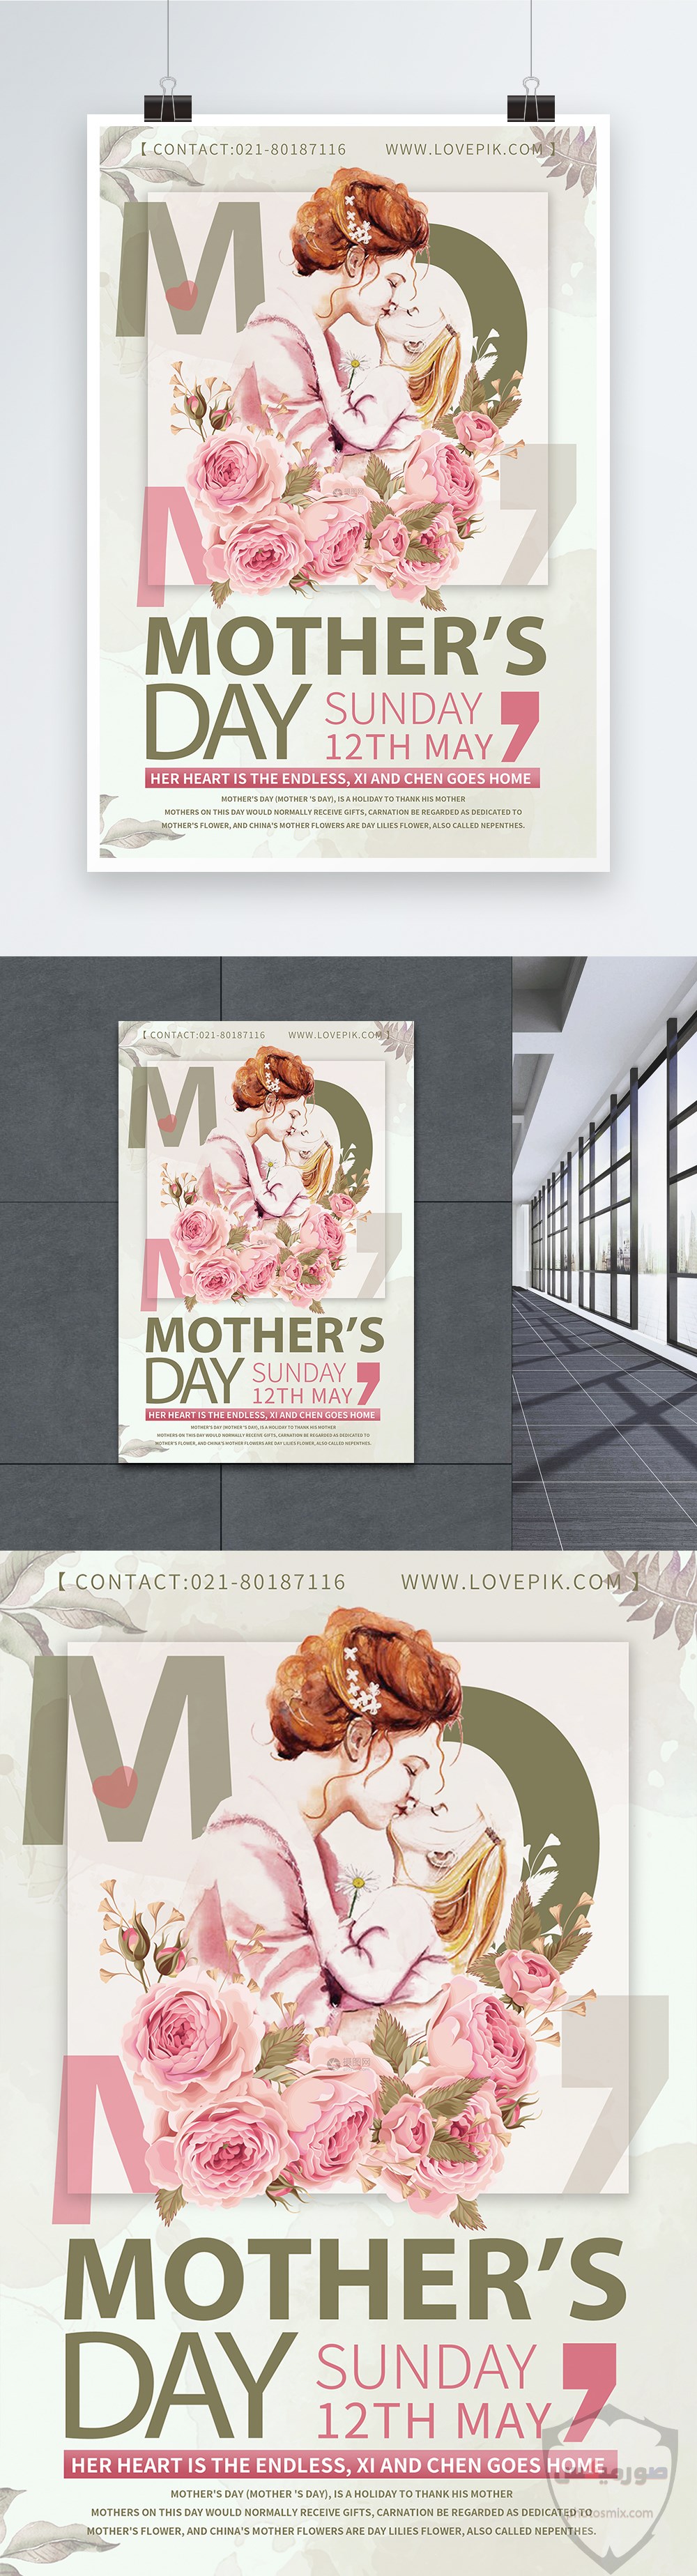 صور عيد الام 2020 أشعار عن الأم يوم الأم رمزيات عن الأم Mother Day 31